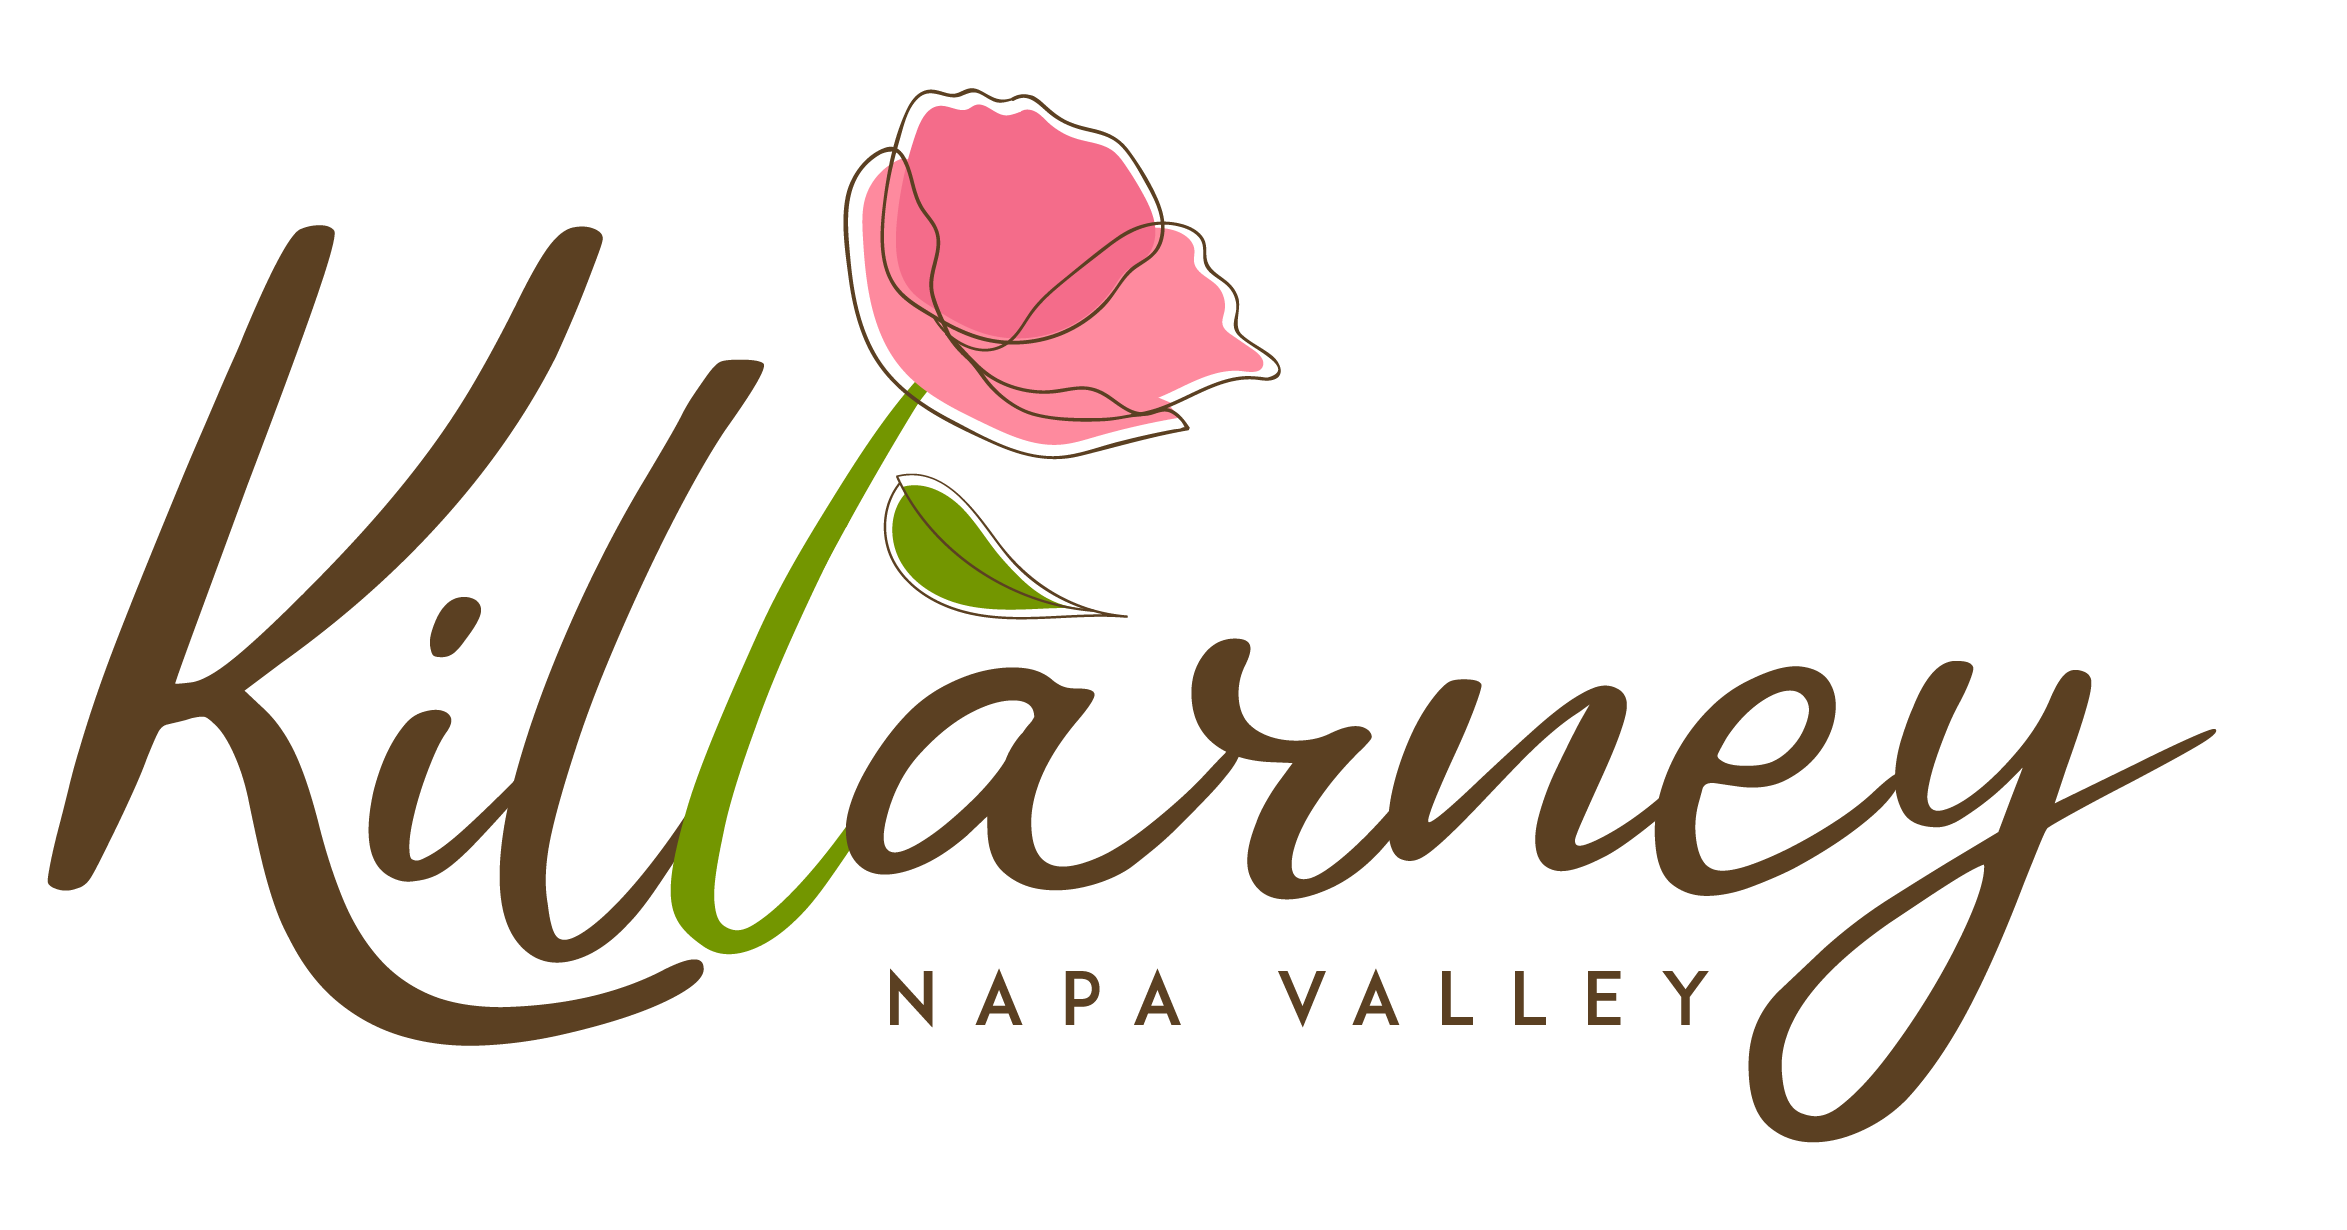 Killarney Napa Valley